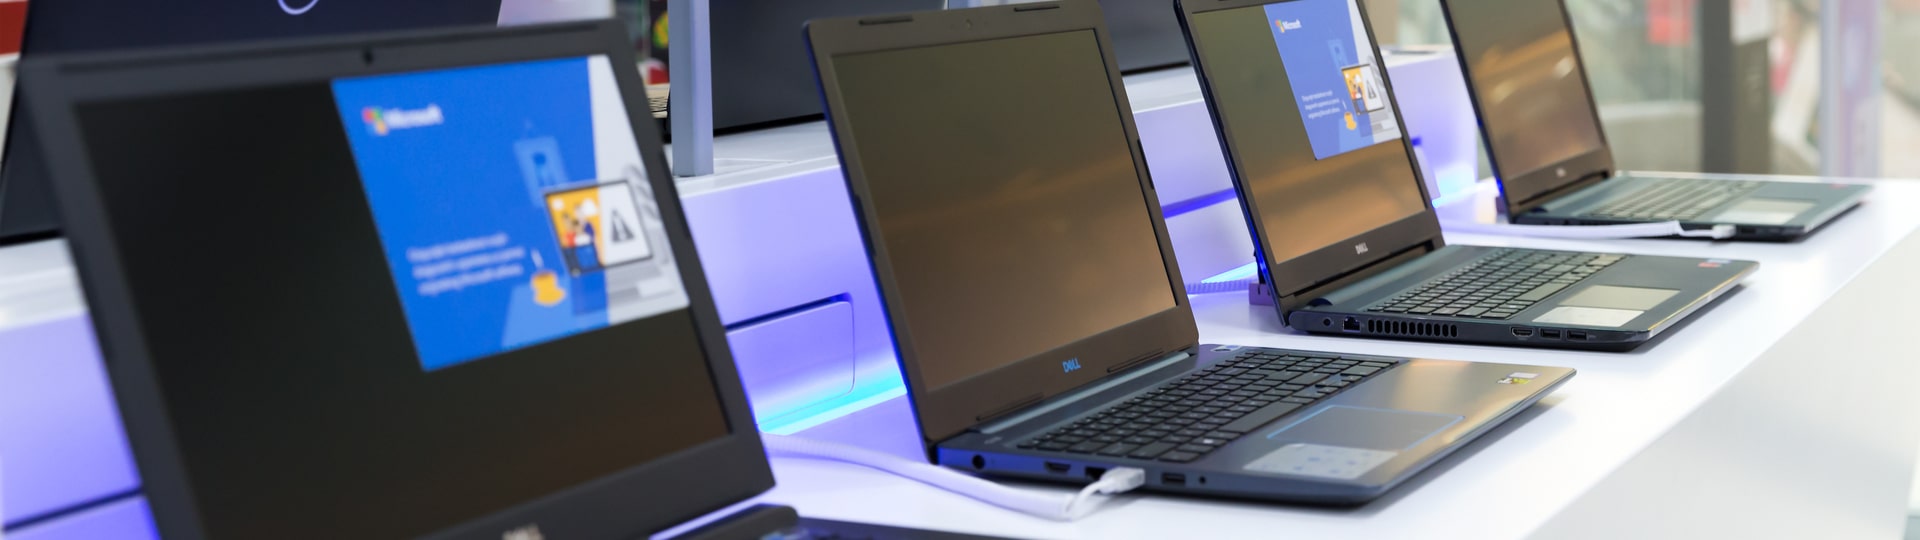 Zisk firem Dell a HP díky vysoké poptávce po počítačích výrazně vzrostl